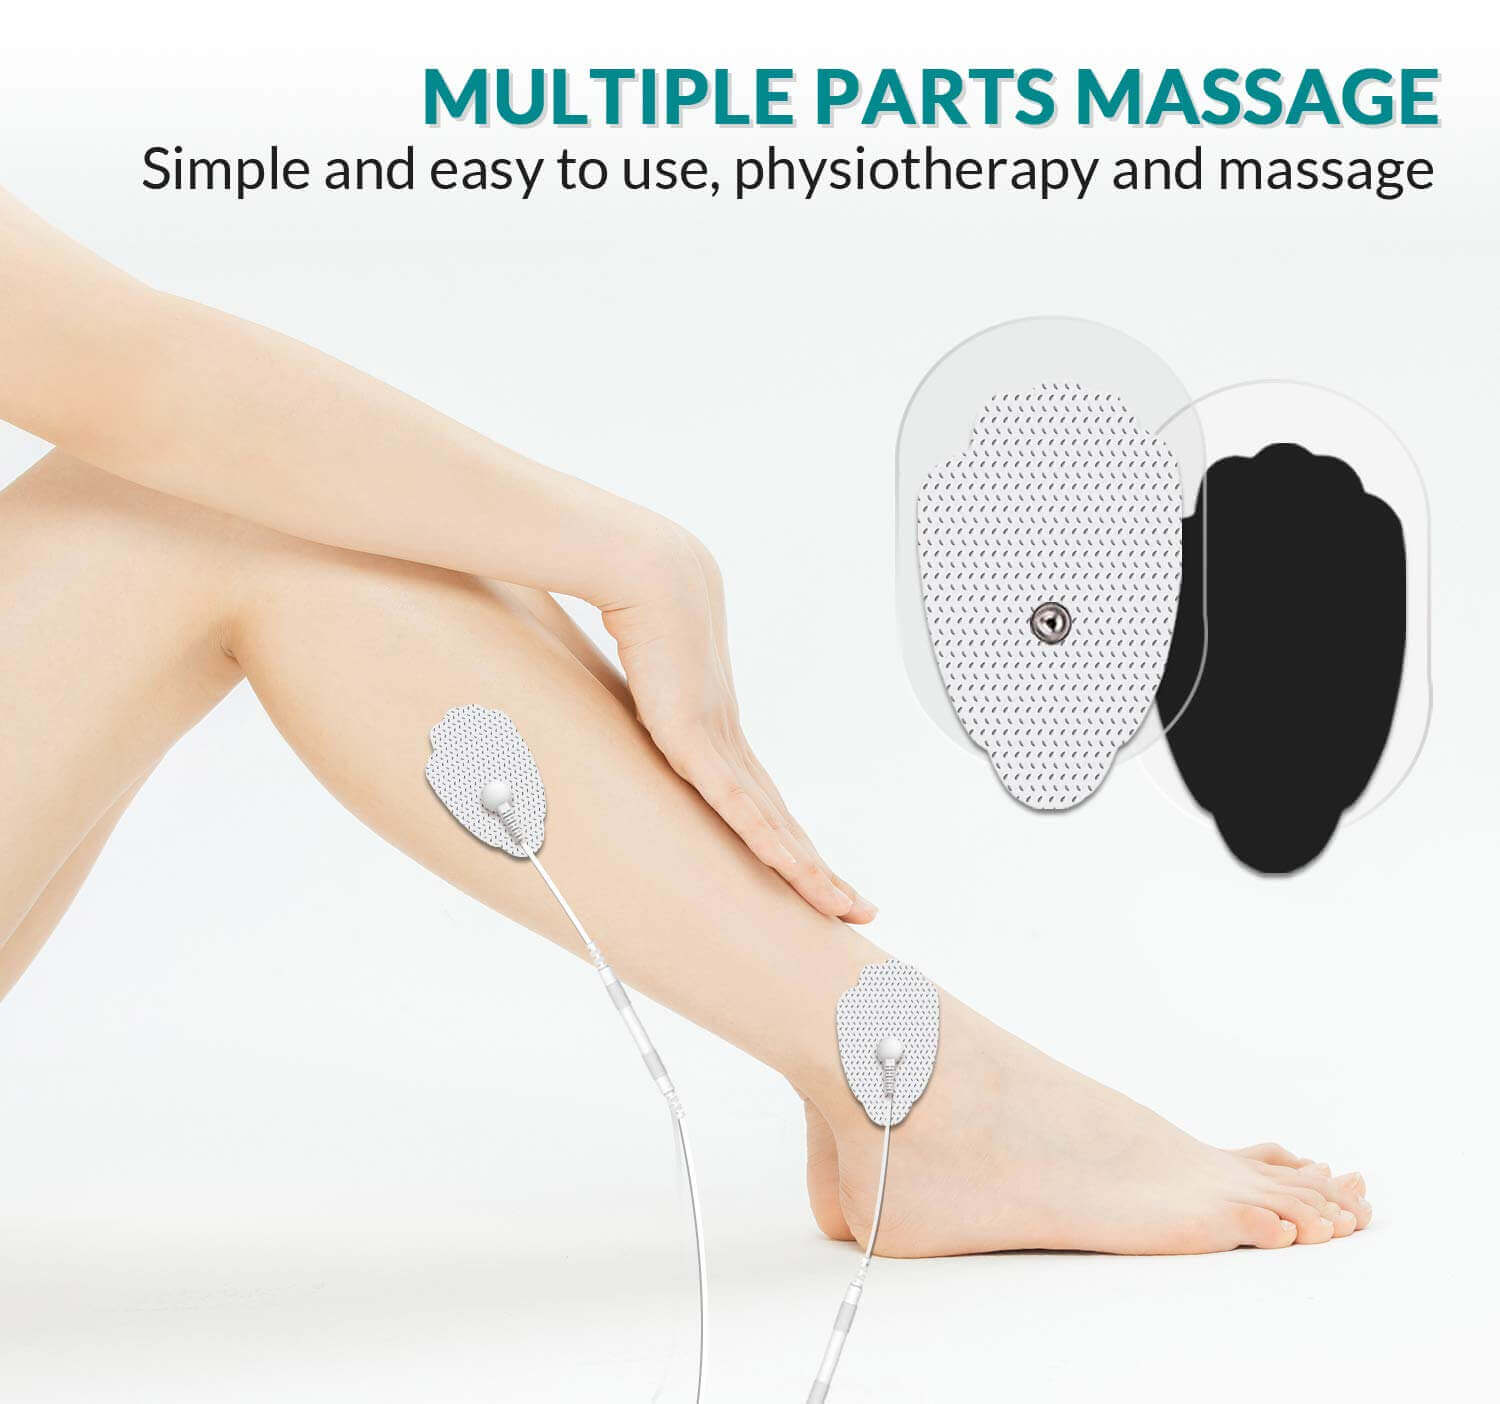 DONECO 20 Pcs Snap Electrodes Pads, Fit for multiple parts massage